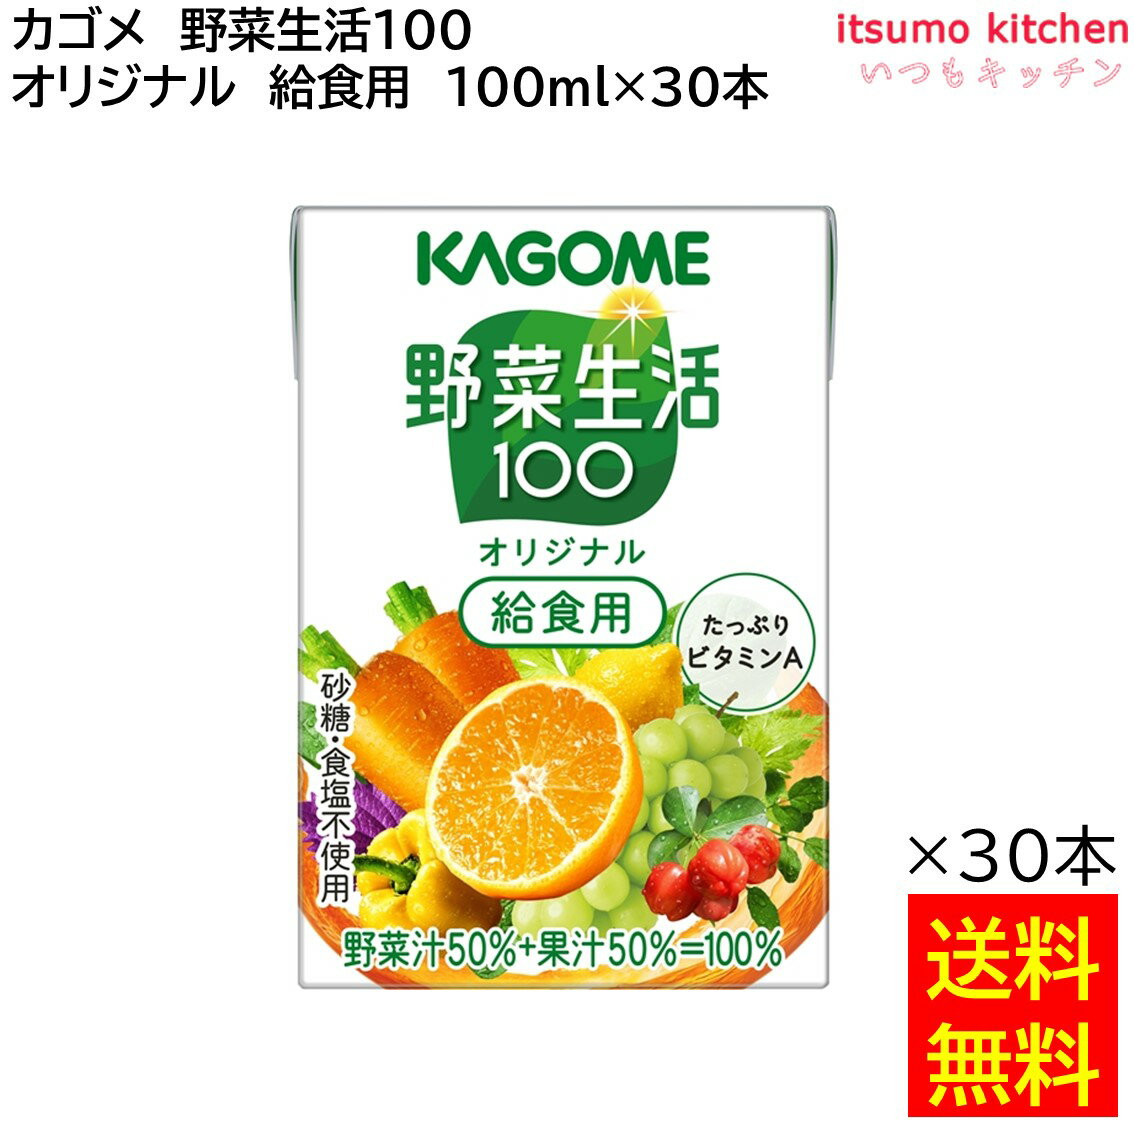 楽天itsumo kitchen【送料無料】 野菜生活100 オリジナル 給食用 100ml×30本 カゴメ